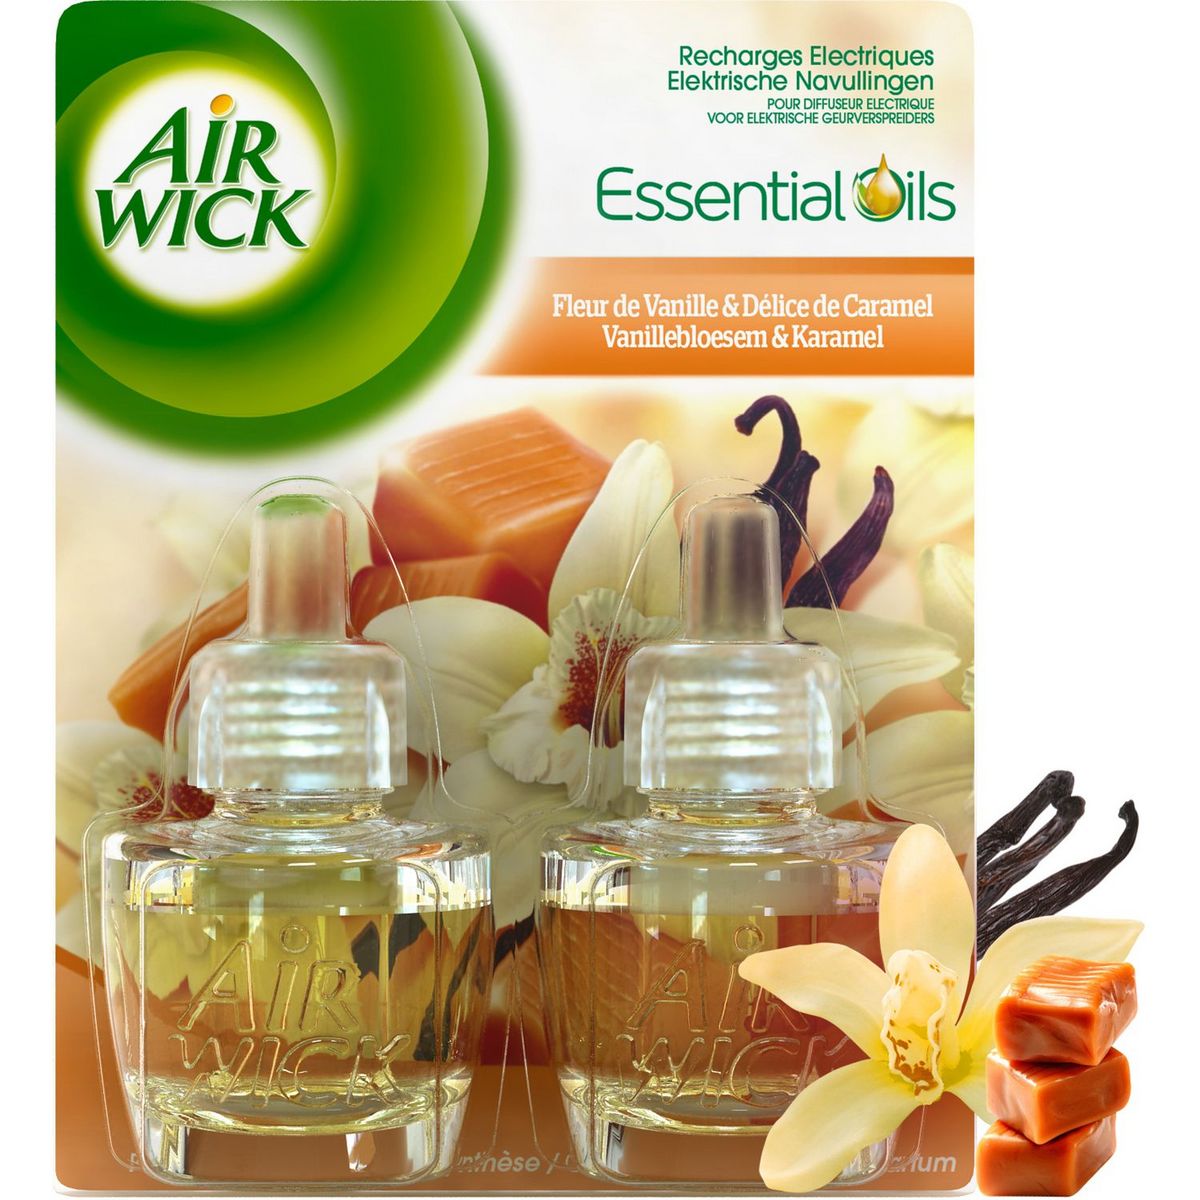 AIR WICK Essential Oils Recharges électriques fleurs de vanille et